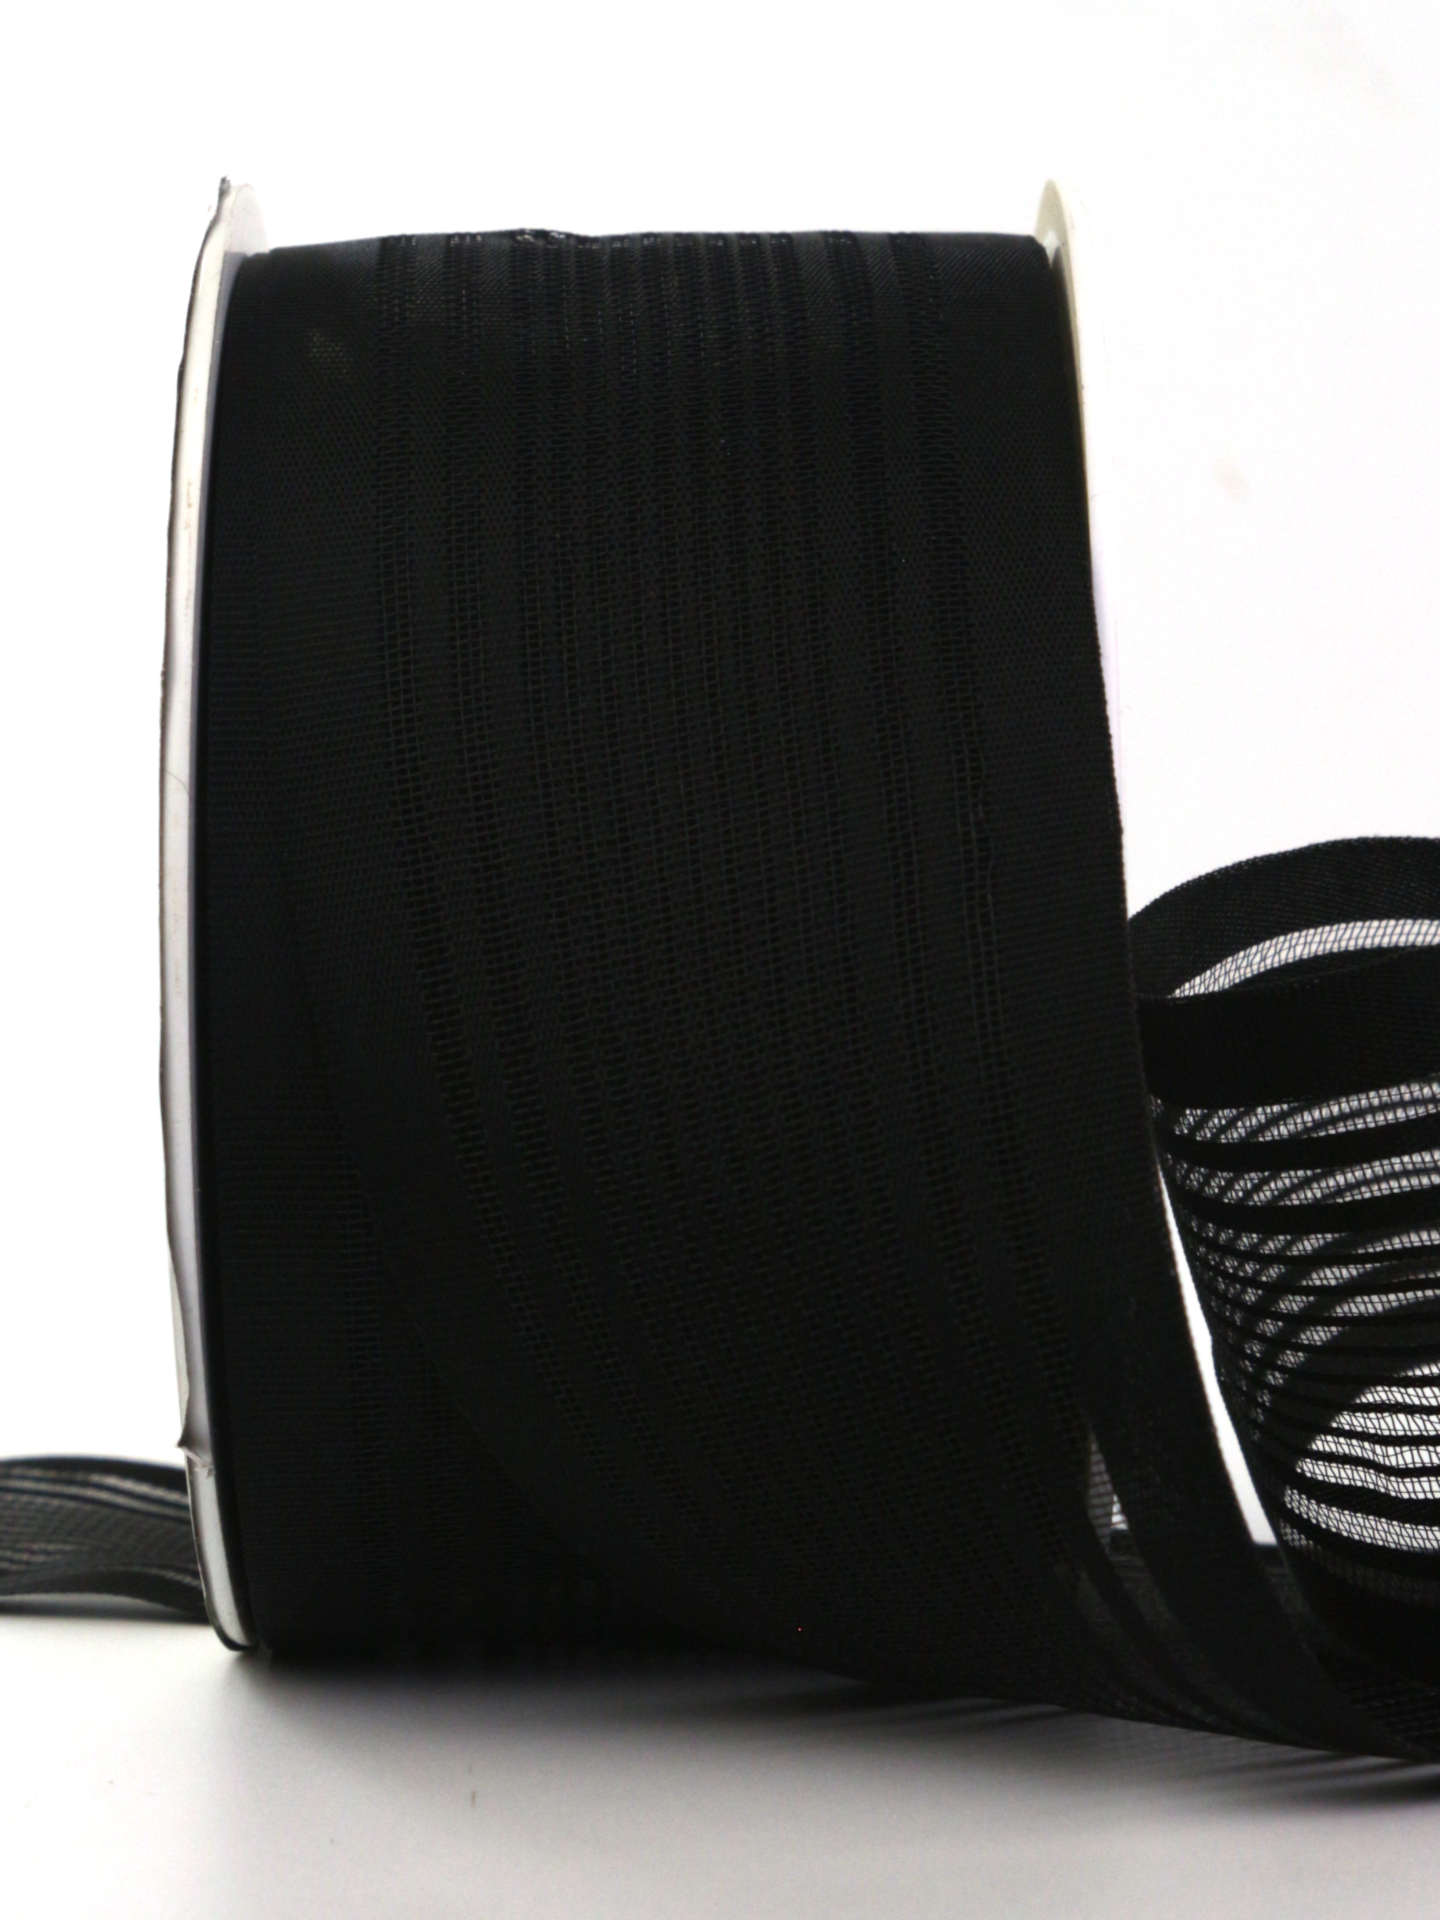 Gestreifter Trauerflor, schwarz, 50 mm breit, 25 m Rolle - trauerband, trauerflor